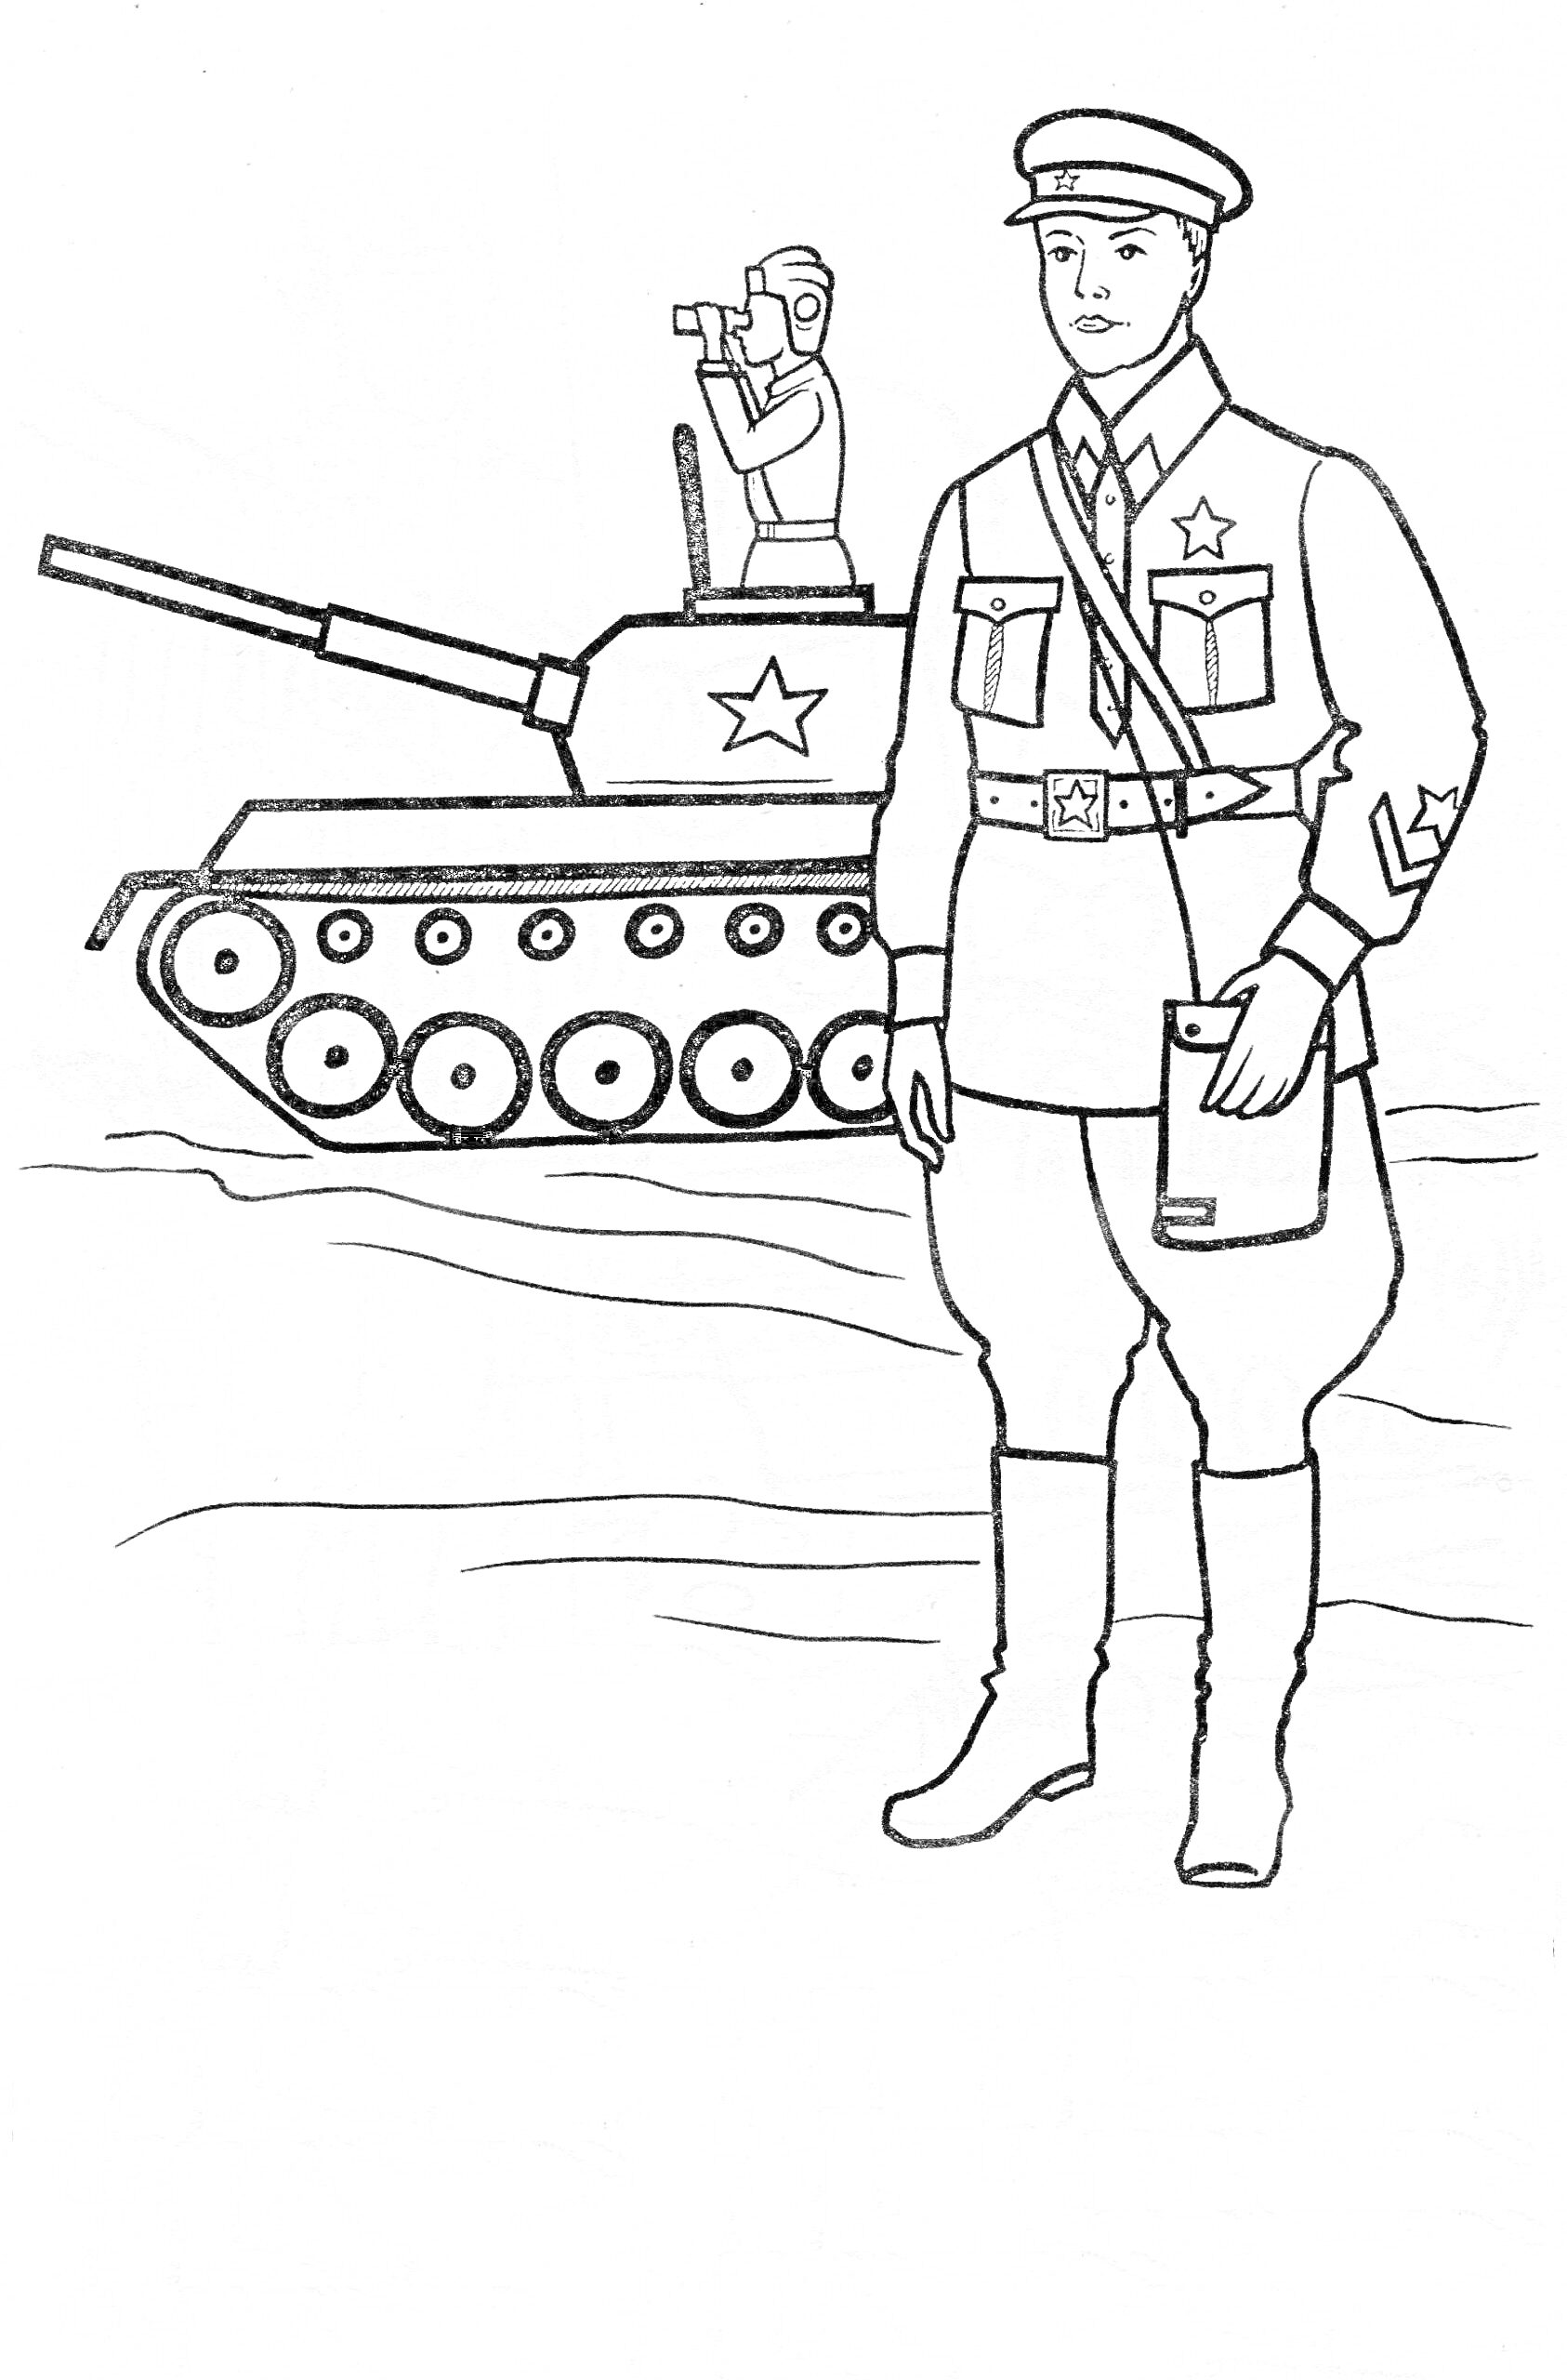 Солдат и танк, бинокль, фуражка, форма, наган, военный вид.